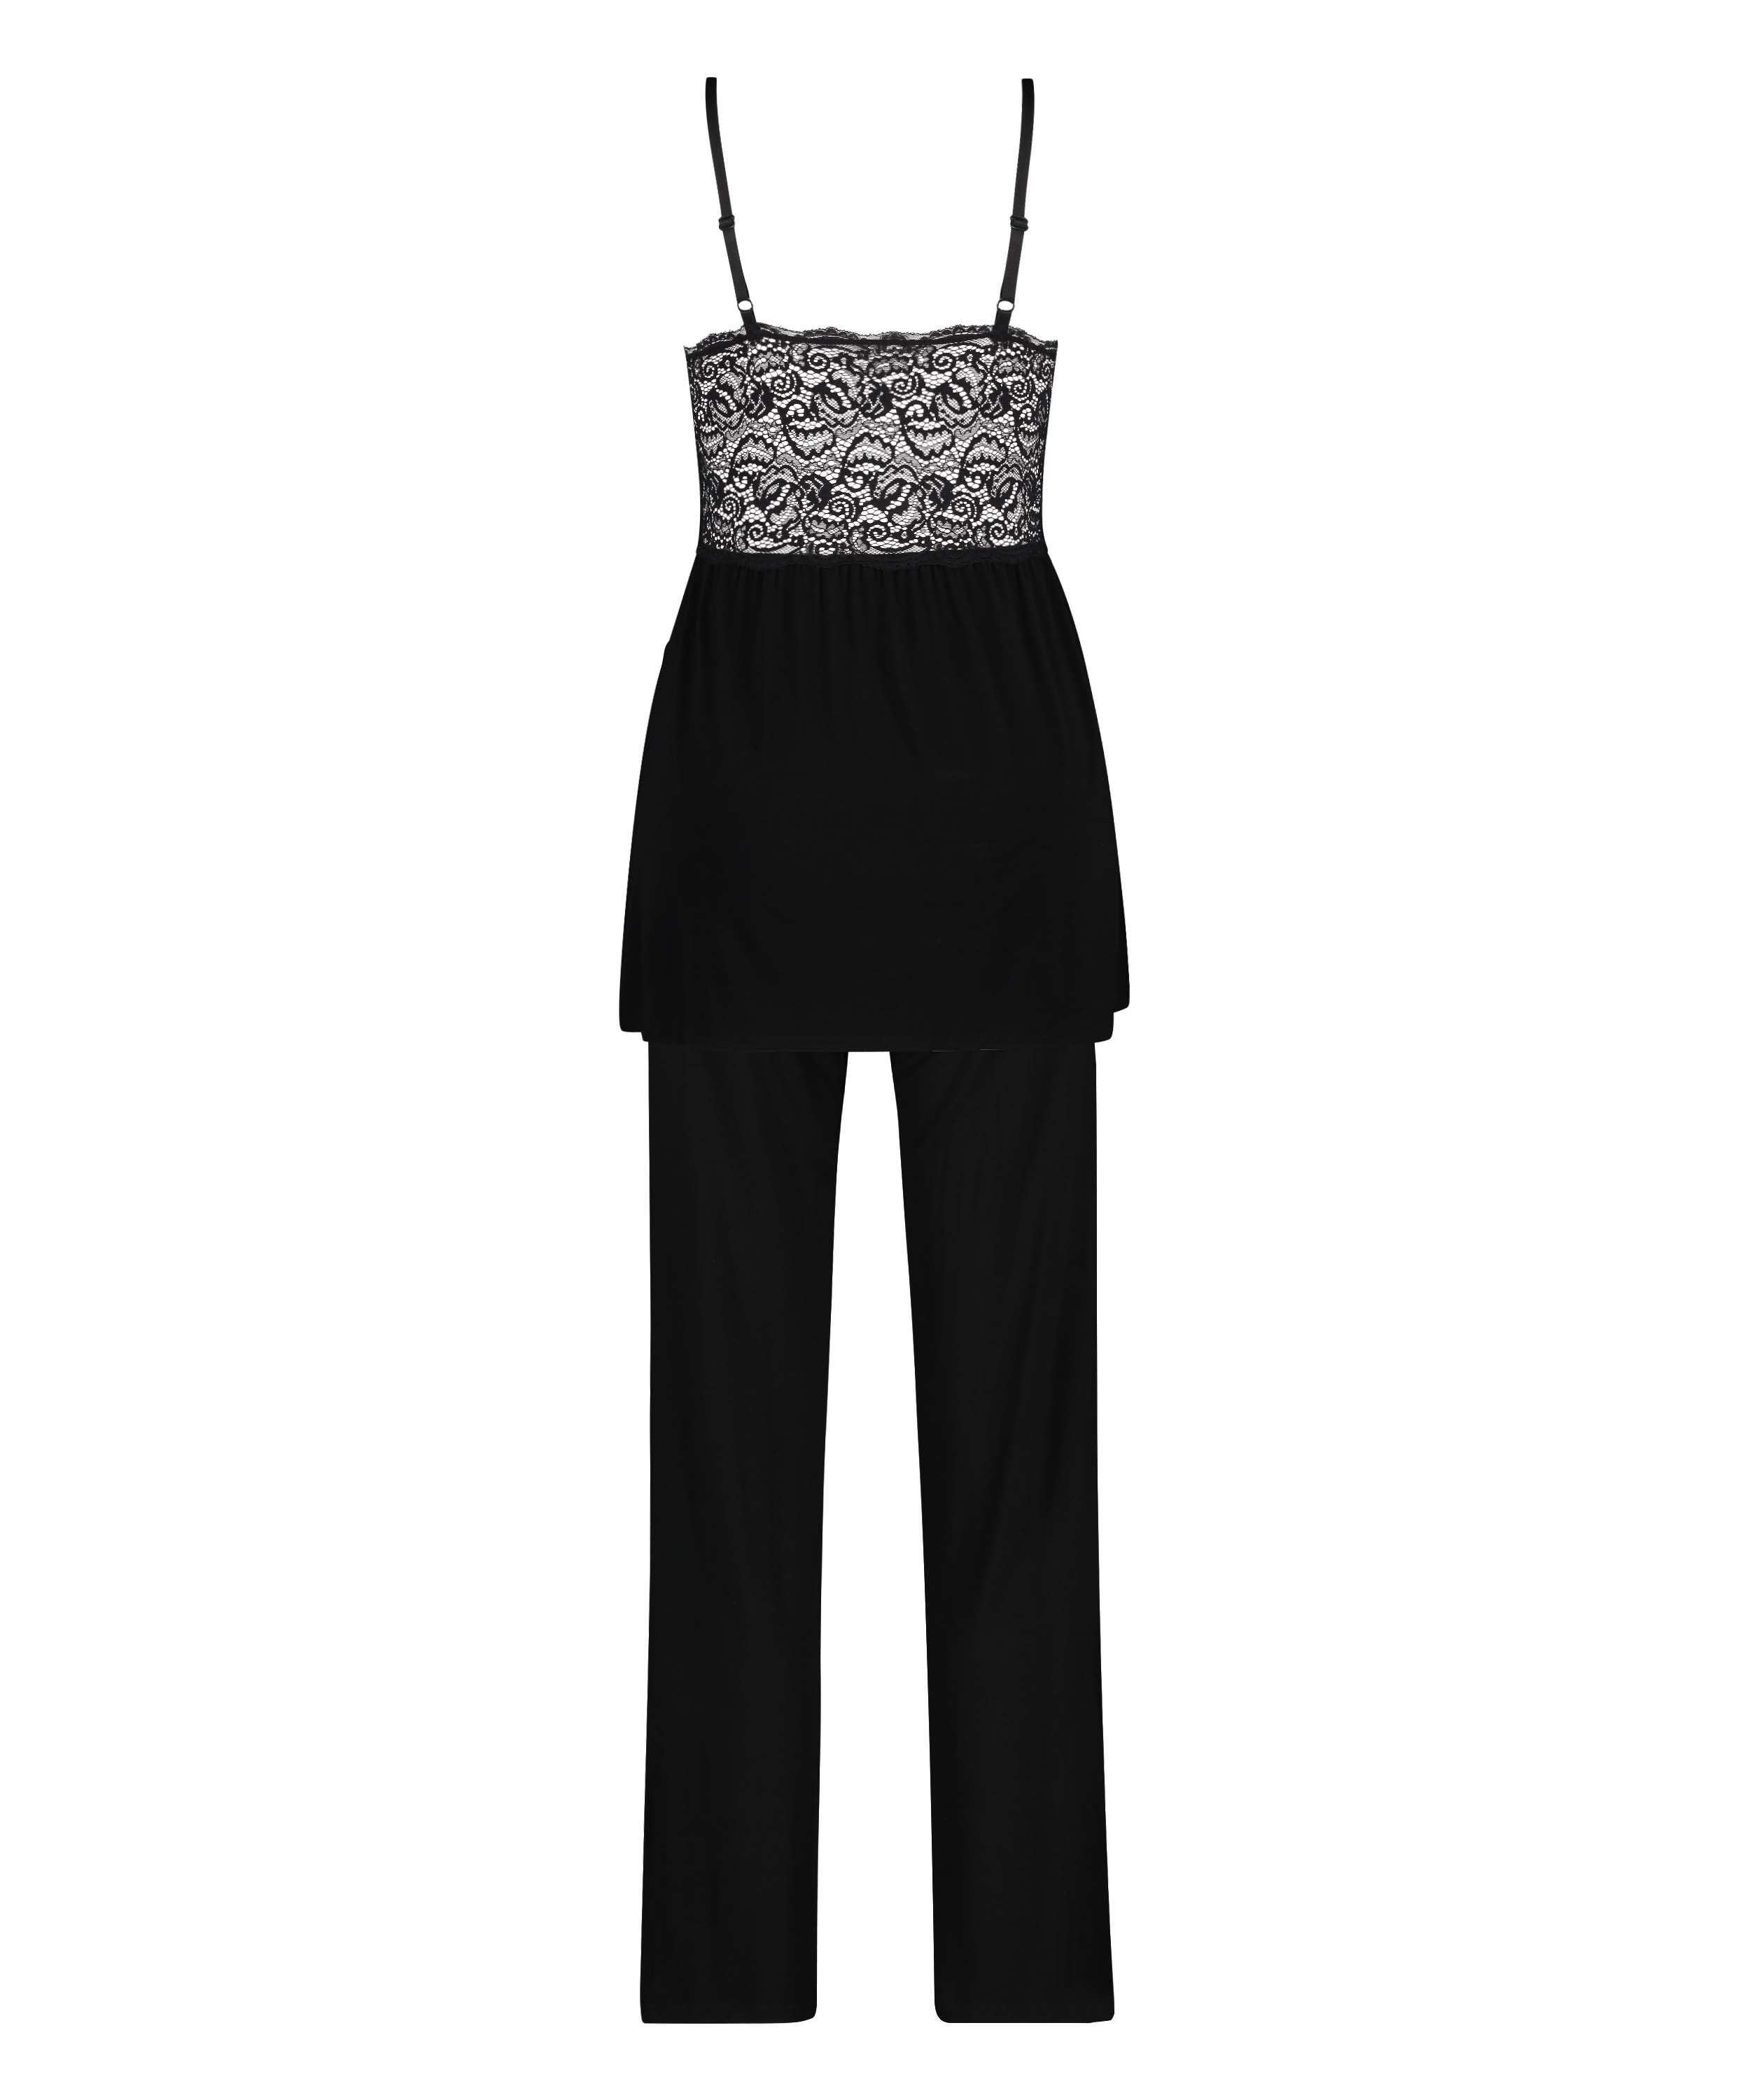 Vera Lace Pyjama Set, Black, main